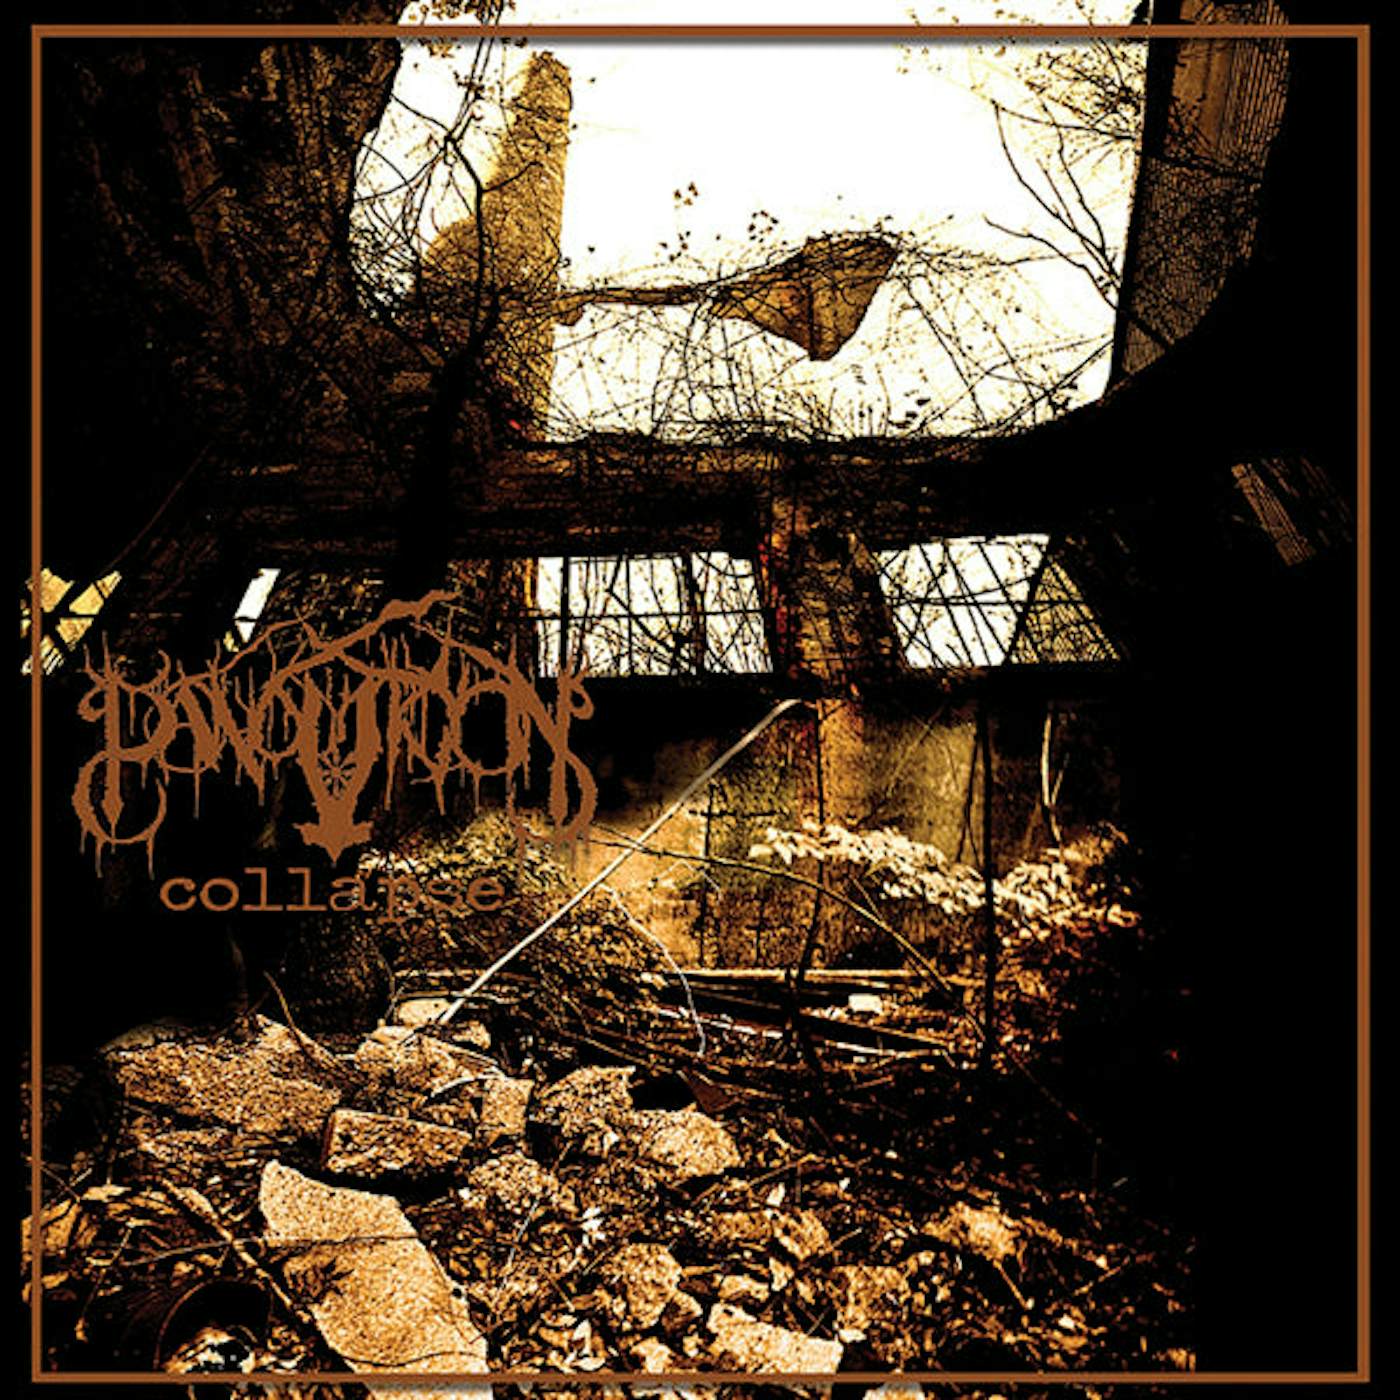 Panopticon LP - Collapse (Gold/Black Splatter Vinyl + Cd)